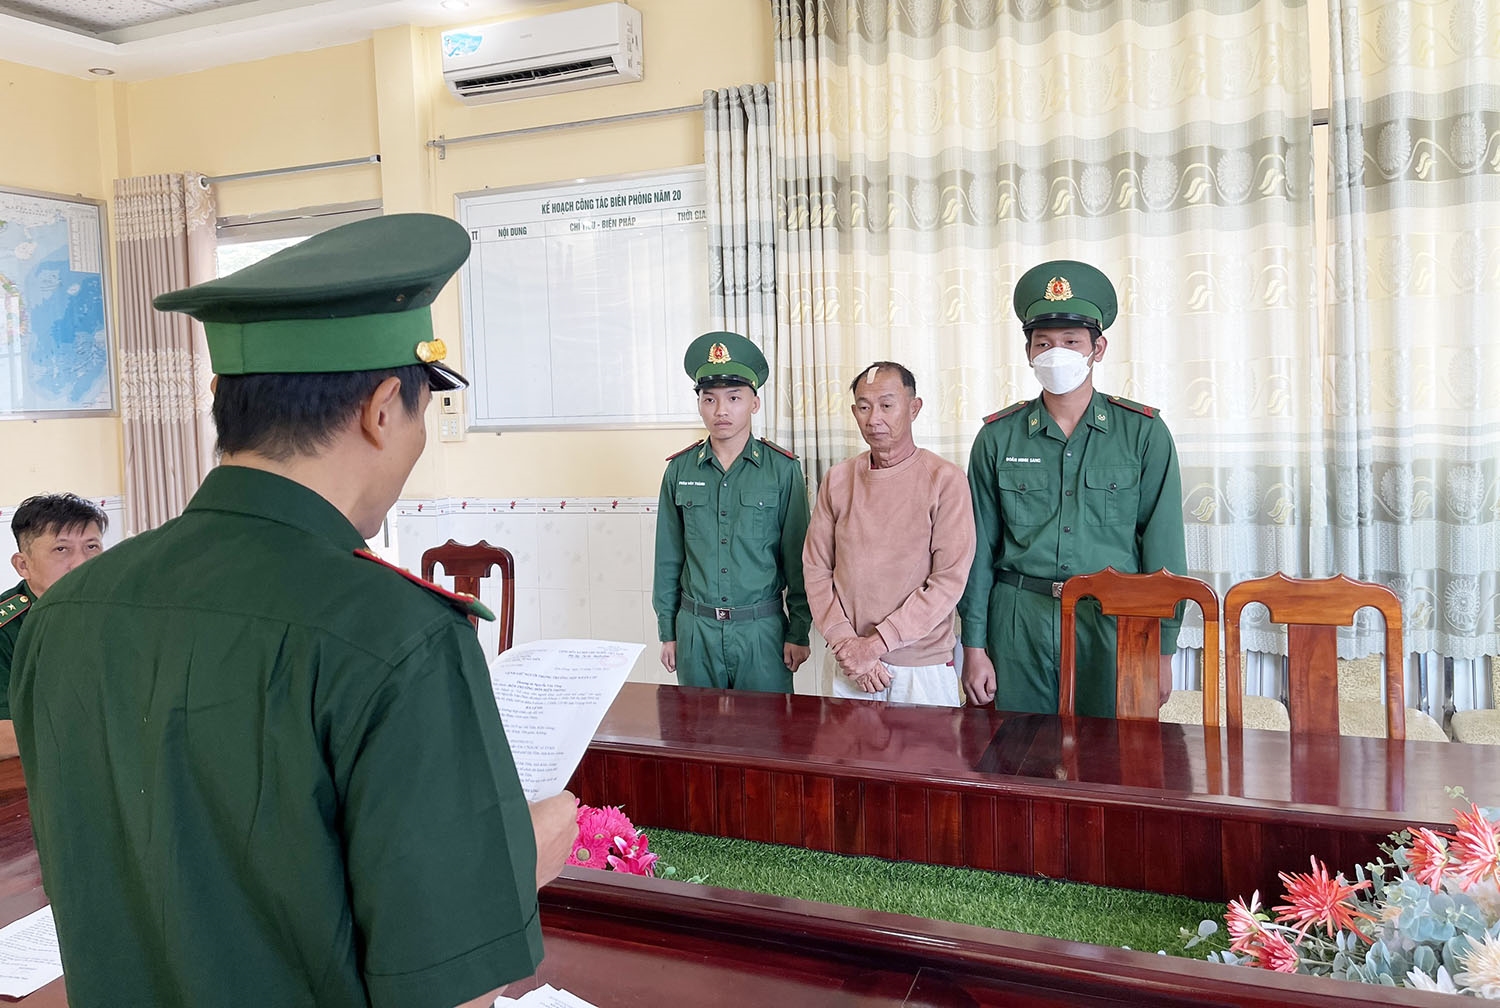 Tống đạt lệnh bắt giữ đối tượng Nguyễn Văn Phán “Tổ chức cho người khác xuất cảnh trái phép”